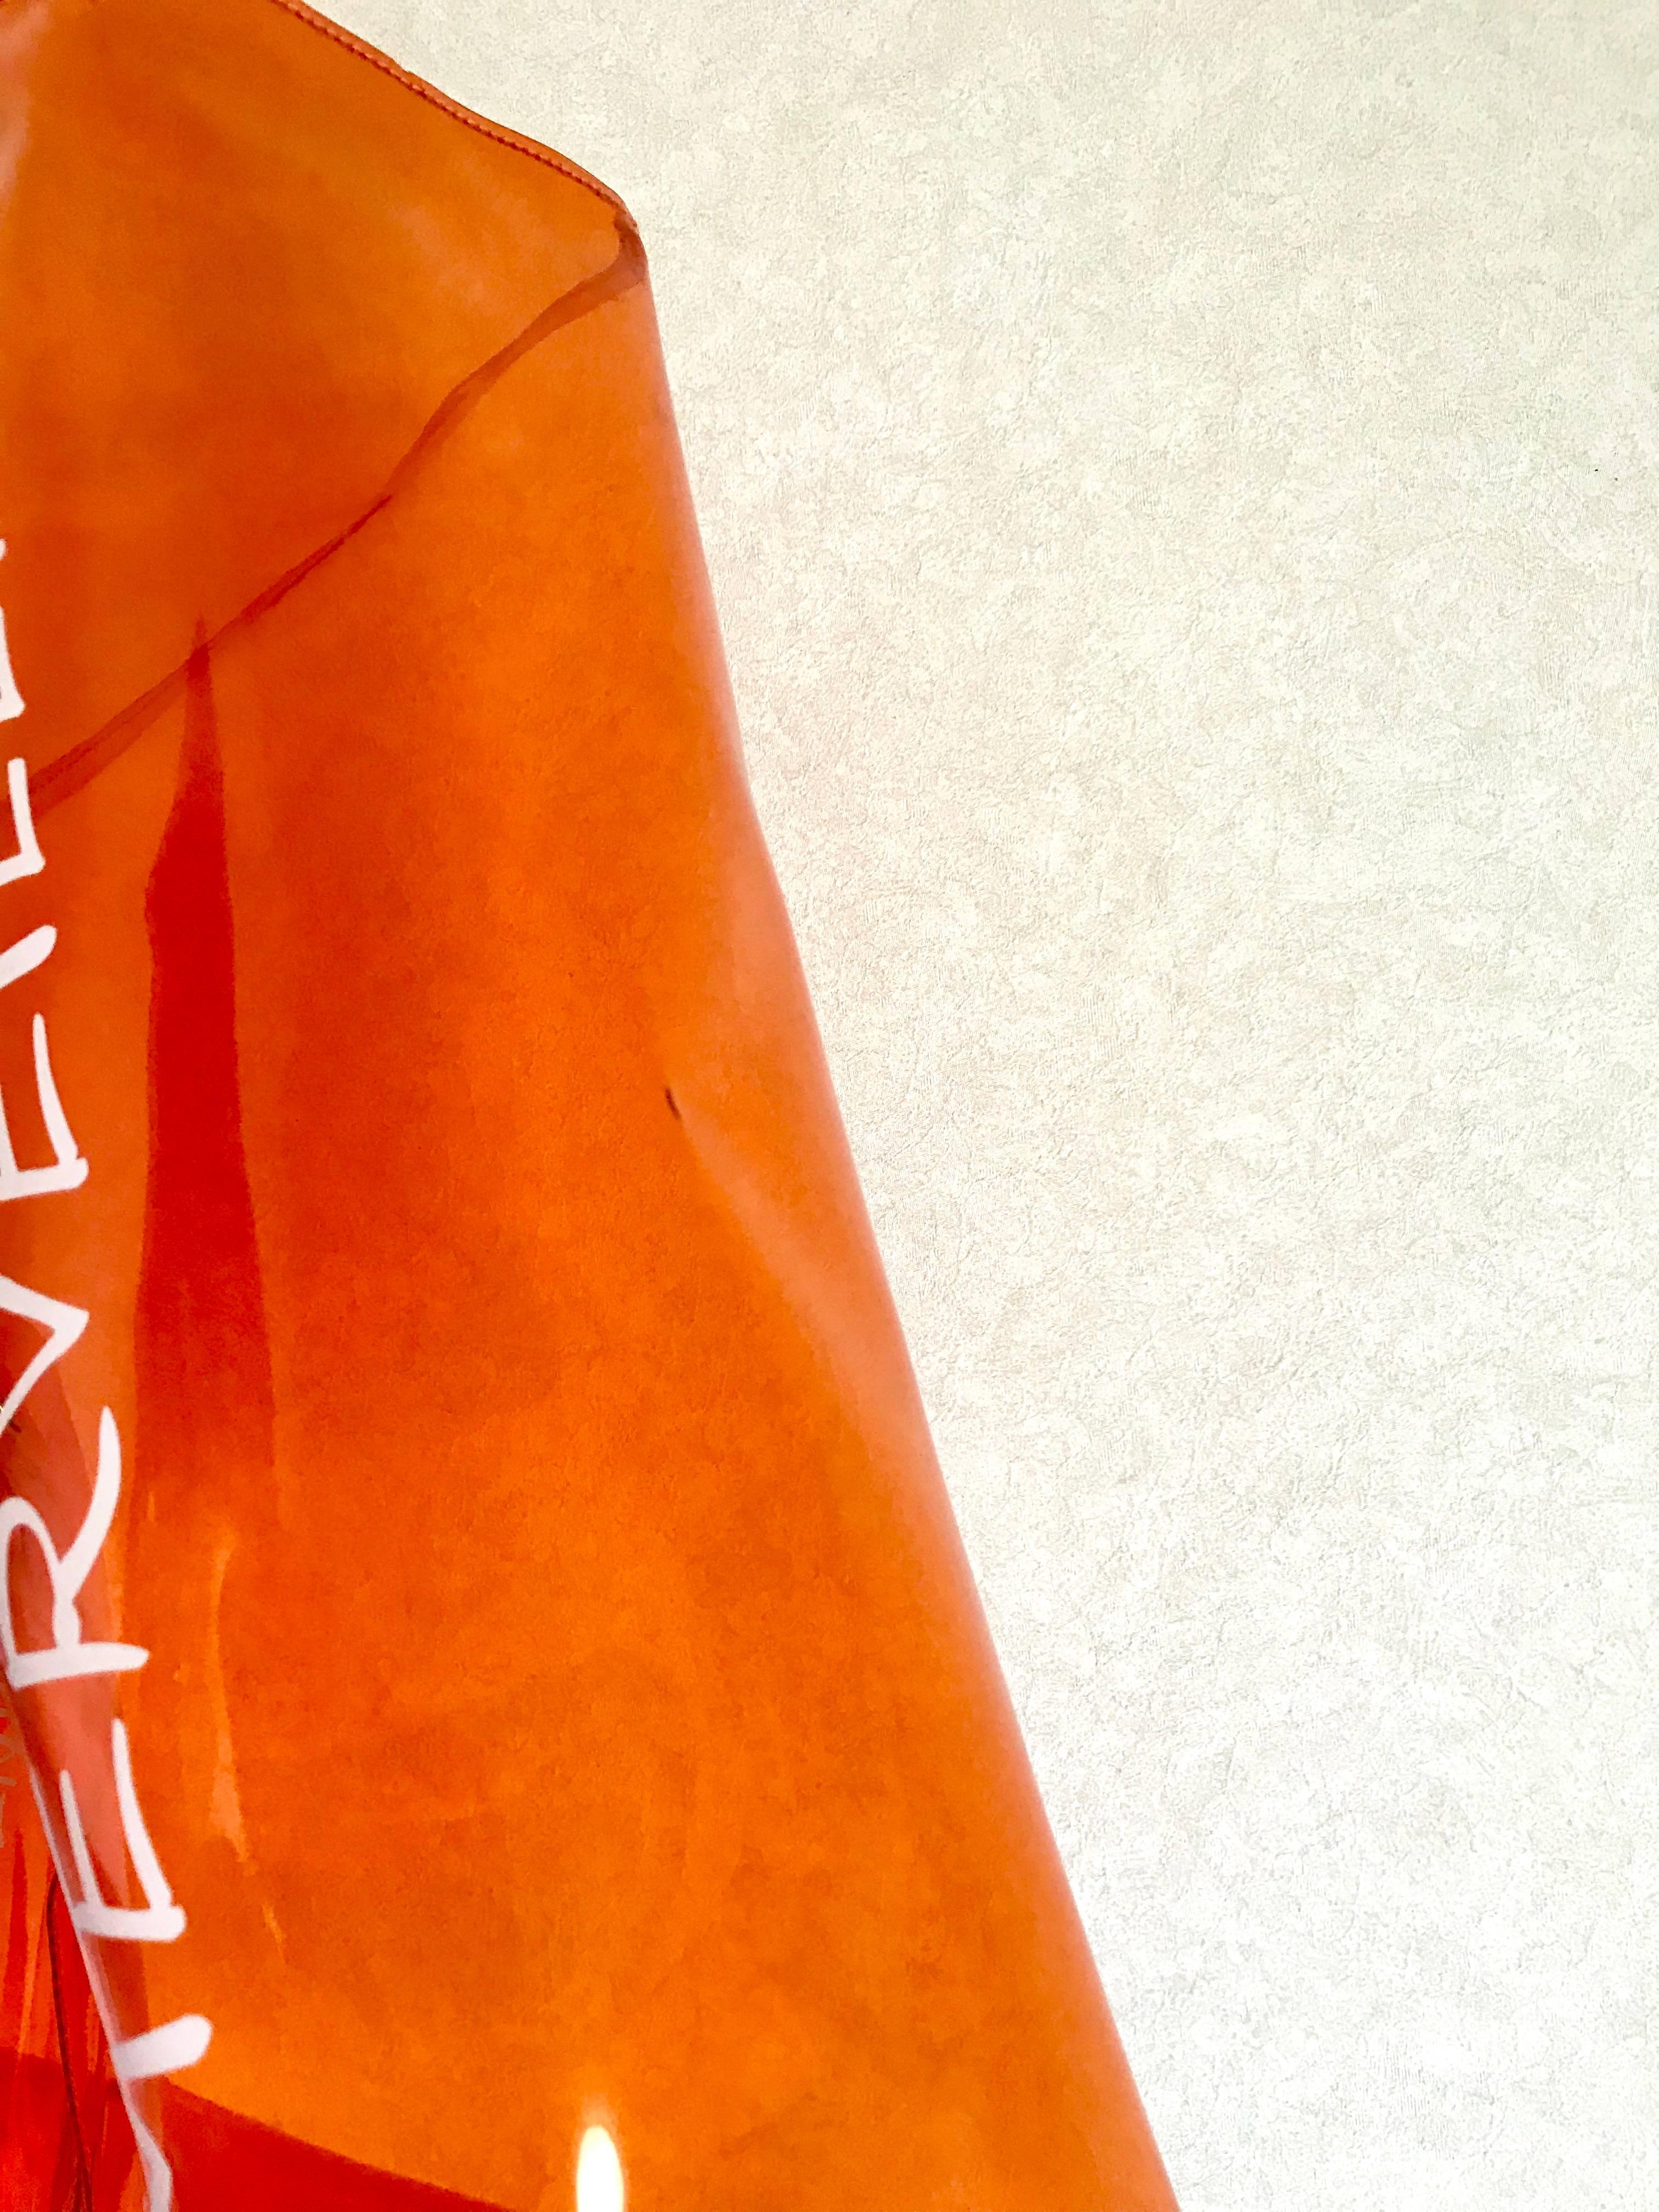 Vintage Hermes rare transparent orange vinyl Kelly bag Japan Limited Edition. 2